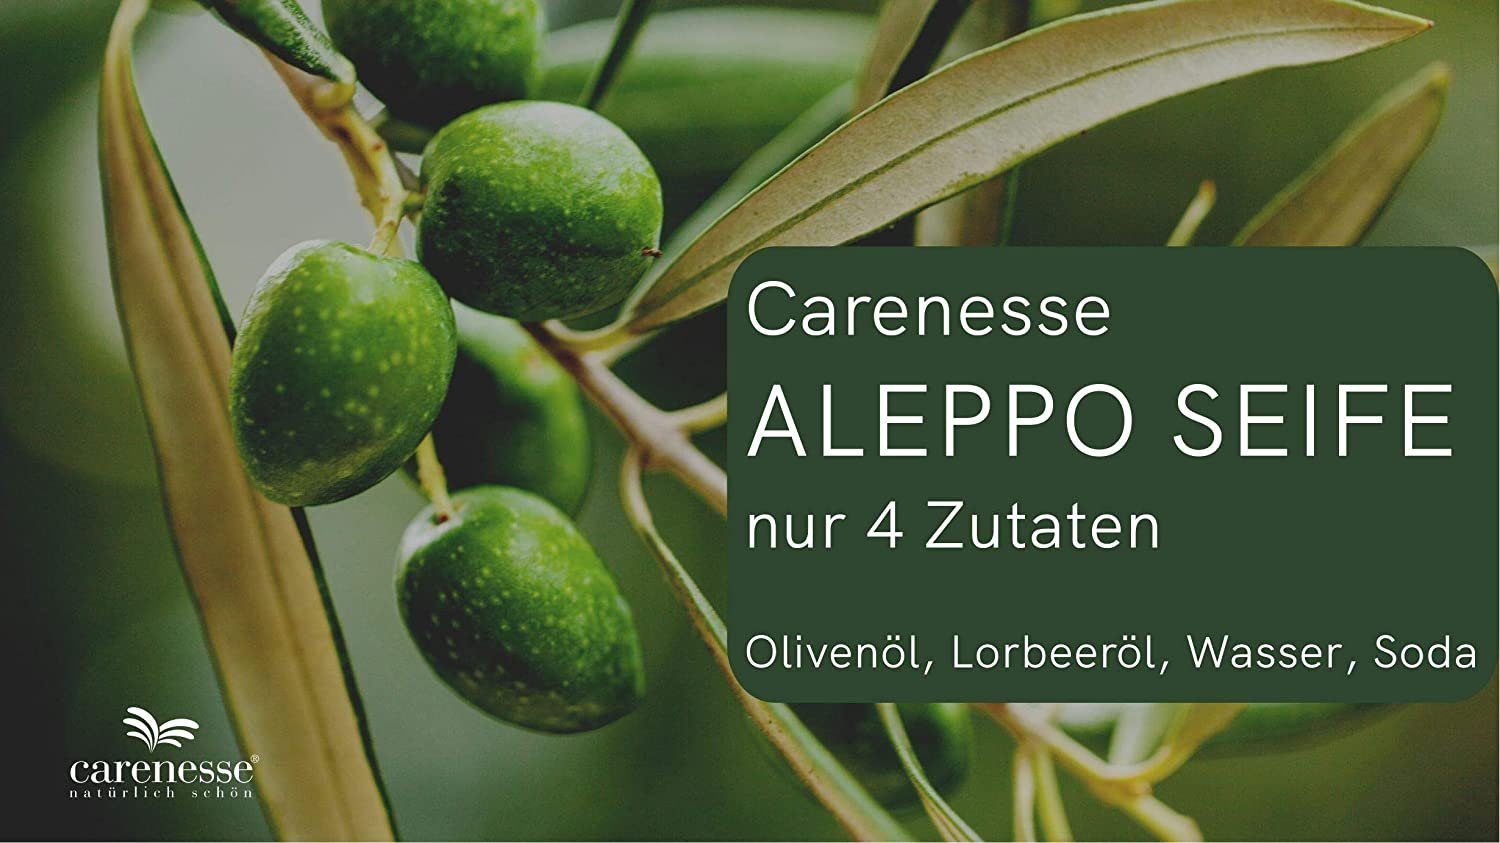 Aleppo-Seife, Lorbeeröl & Carenesse Aleppo 200 g, 2 Olivenöl, Olivenölseife, Original 40% Seife 60% x Lorbeerölseife, Duschseife Alepposeife, Seifen-Set